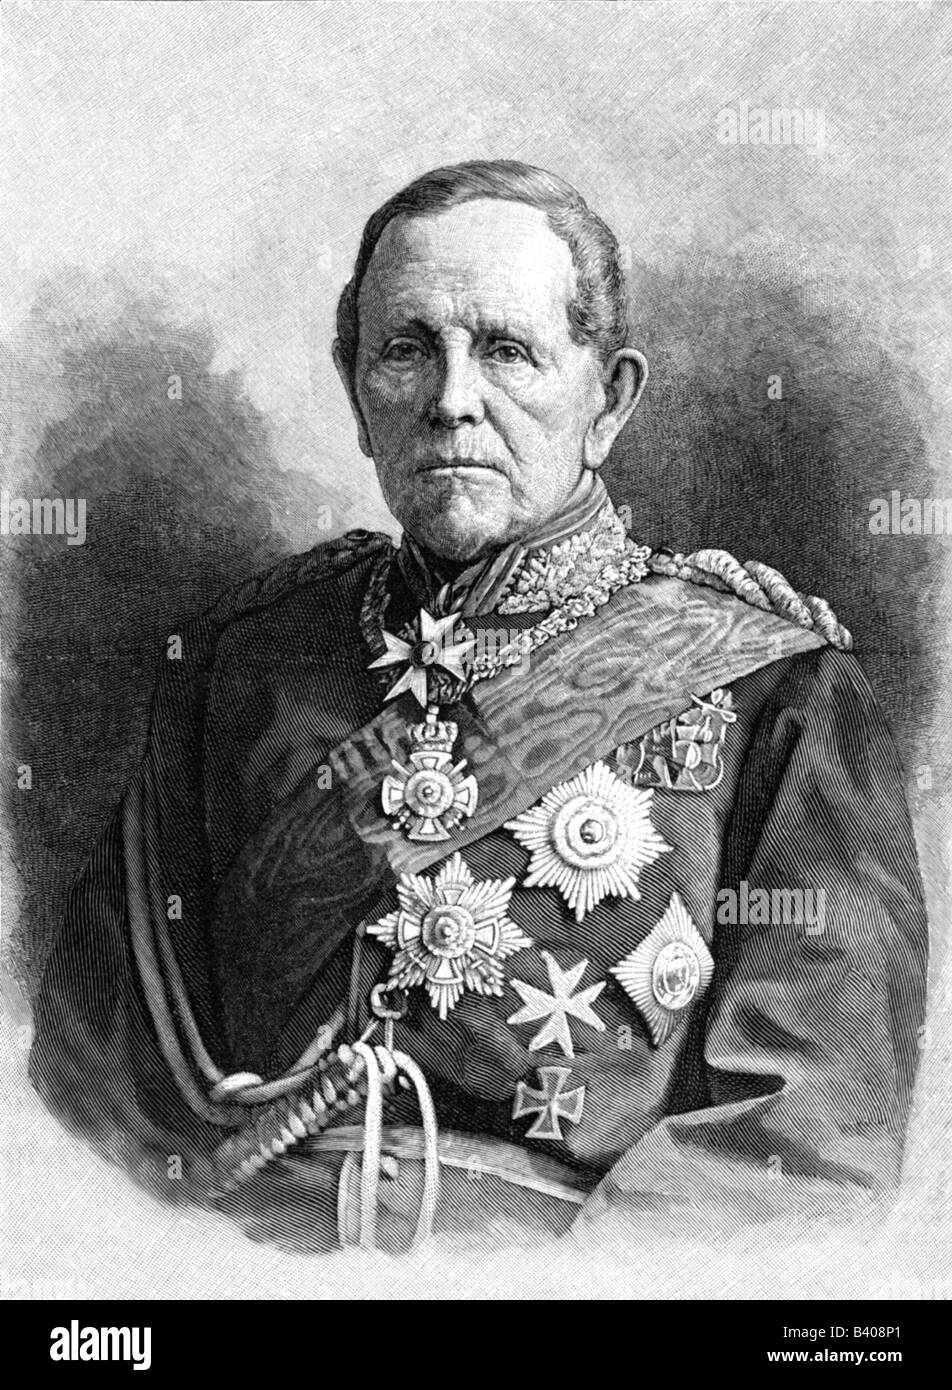 Moltke, Helmuth Karl von, 26.10.1800 - 24.4.1891, Prussian General, a mezza lunghezza, incisione del legno, circa 1885, , Foto Stock